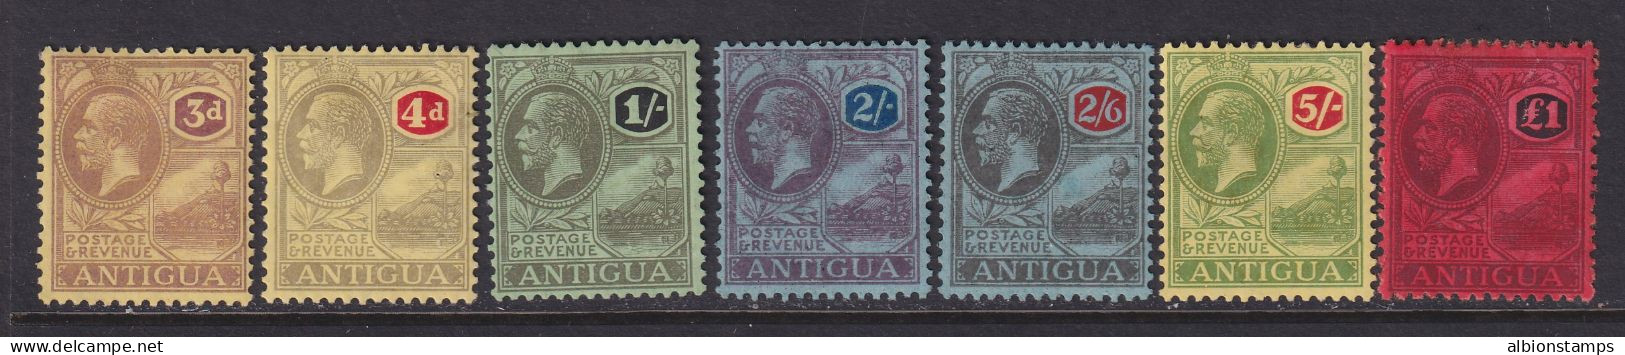 Antigua, Scott 58-64 (SG 55-61), MHR (£1 Some Album Remnants) - 1858-1960 Colonie Britannique